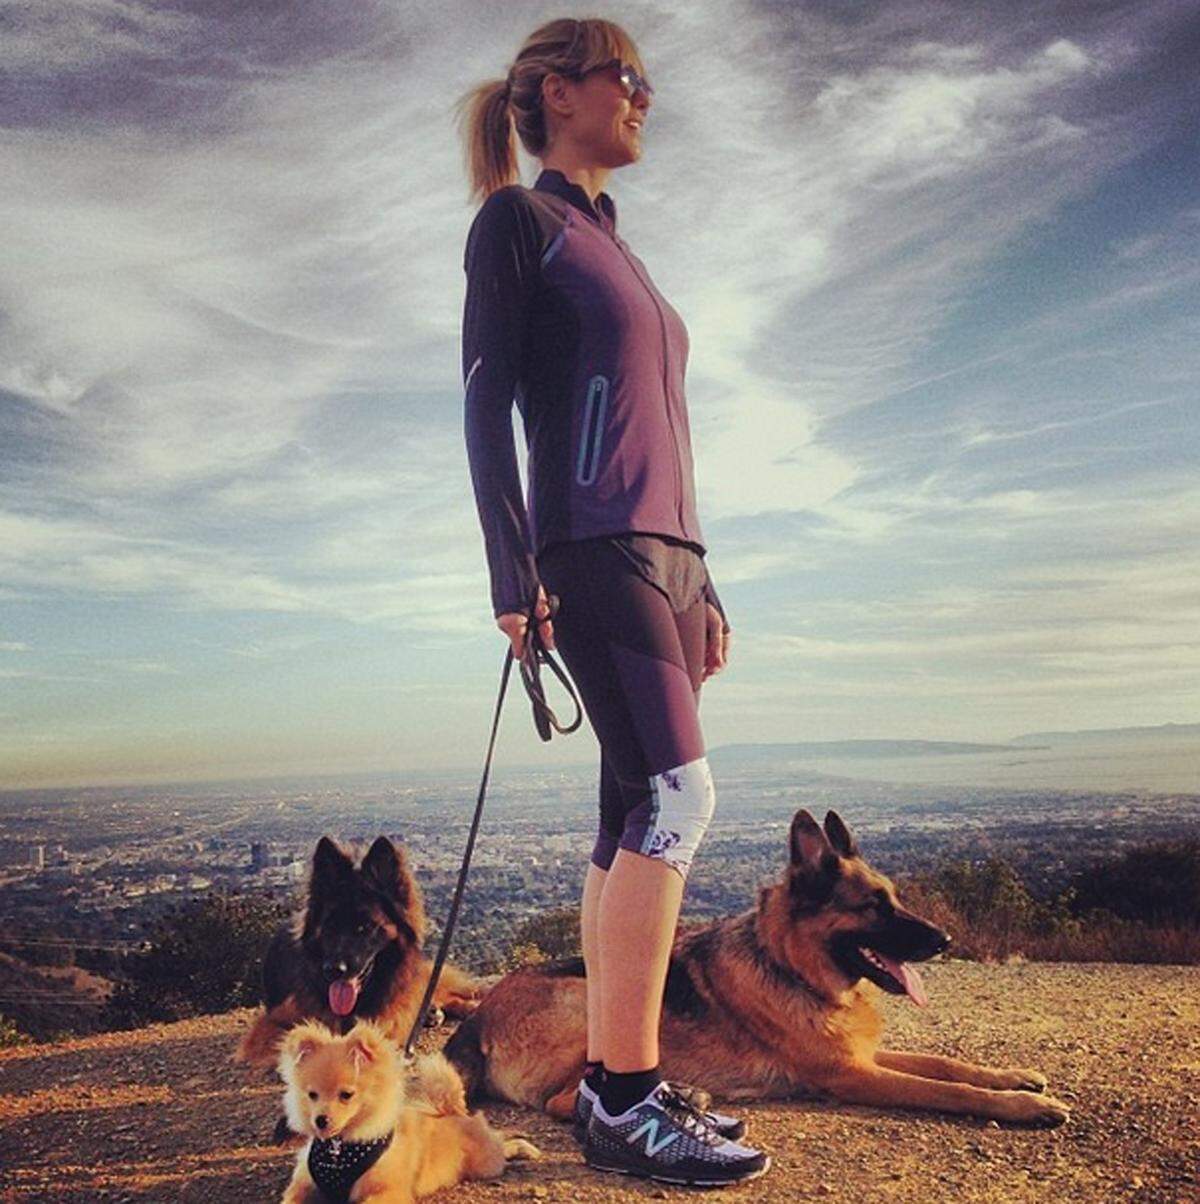 Darin erklimmt sie mit ihren drei Hunden immer wieder die Hollywood Hills.